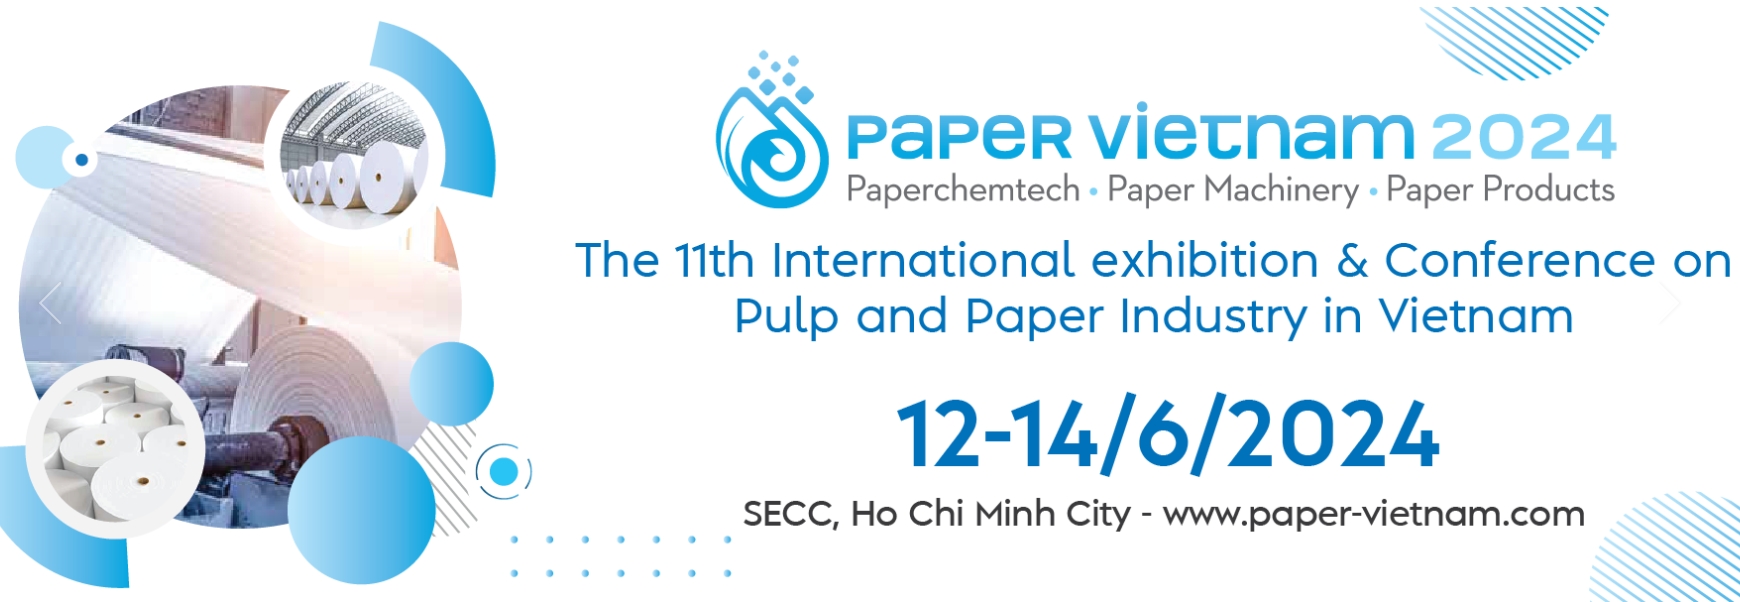 paper vietnam 2024 - международная выставка бумажной индустрии пройдет с 12 по 14 июня